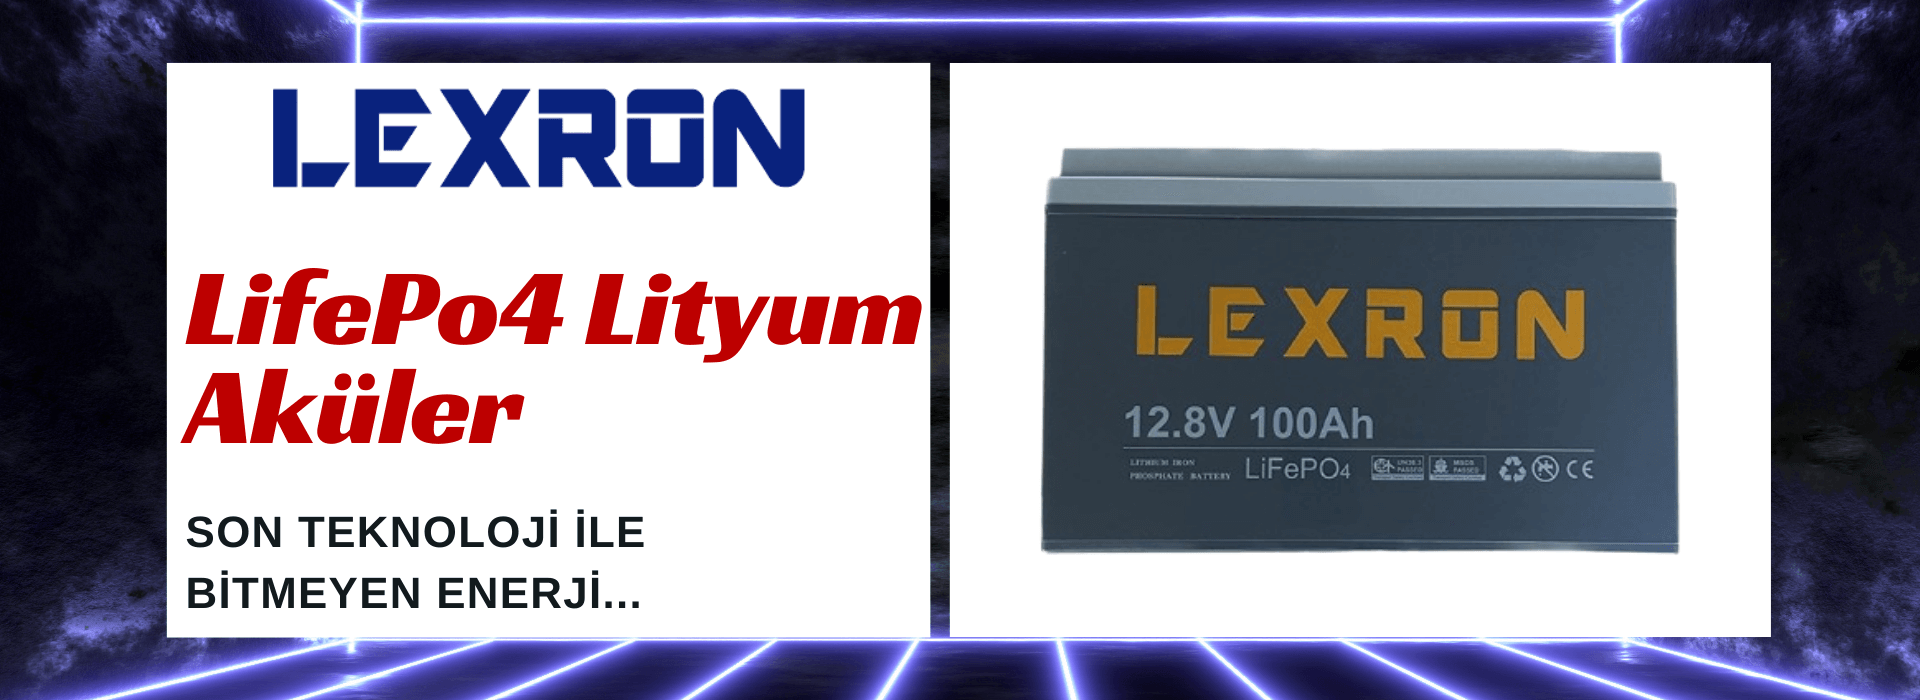 Lexron LifePo4 Lityum Aküler